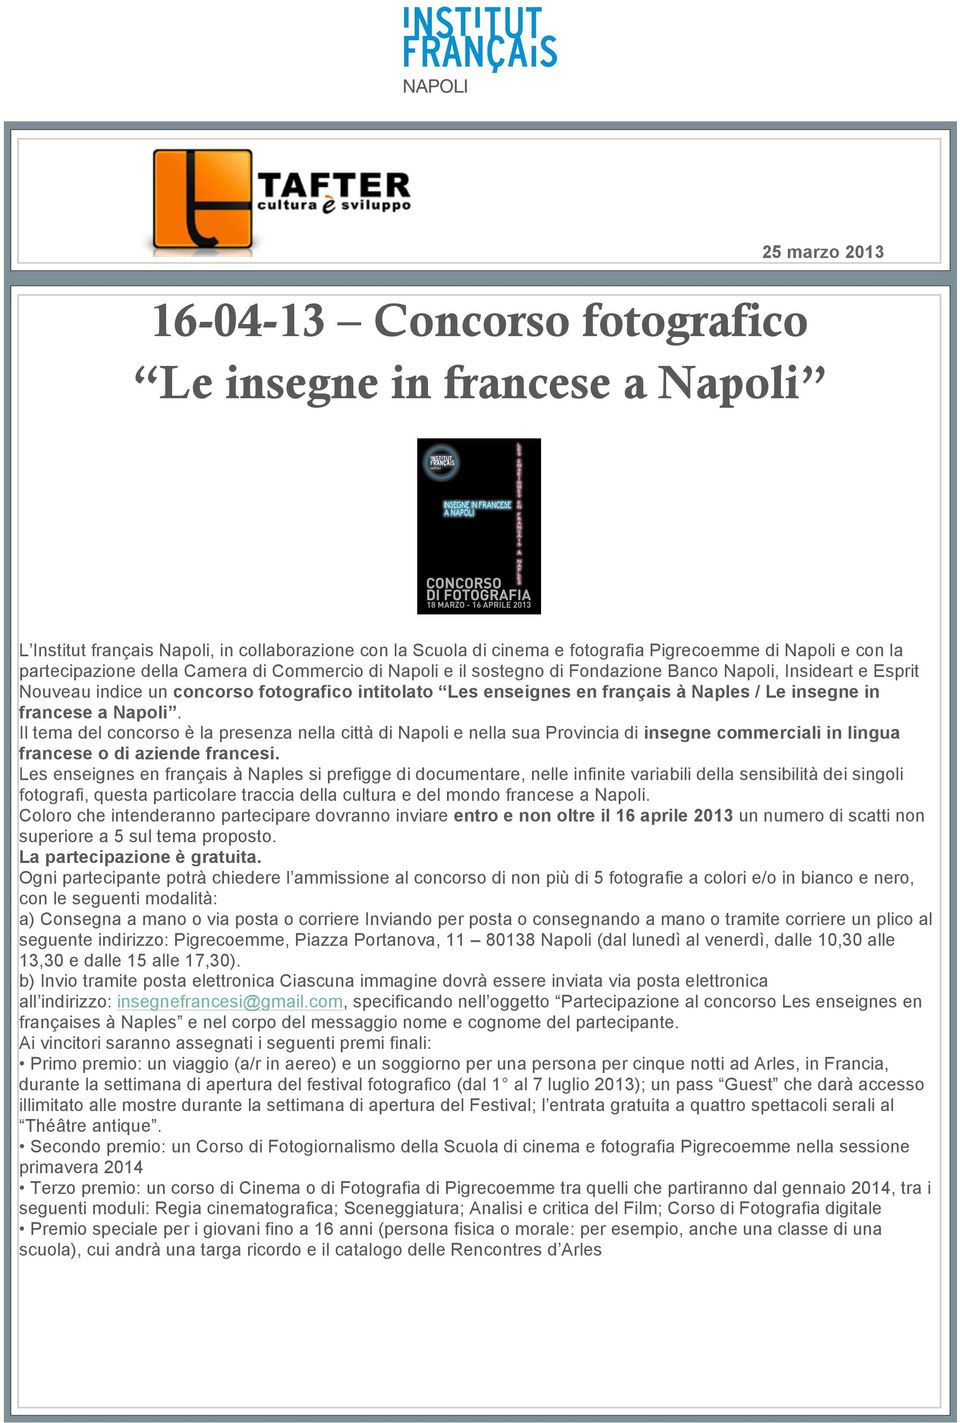 Le insegne in francese a Napoli. Il tema del concorso è la presenza nella città di Napoli e nella sua Provincia di insegne commerciali in lingua francese o di aziende francesi.